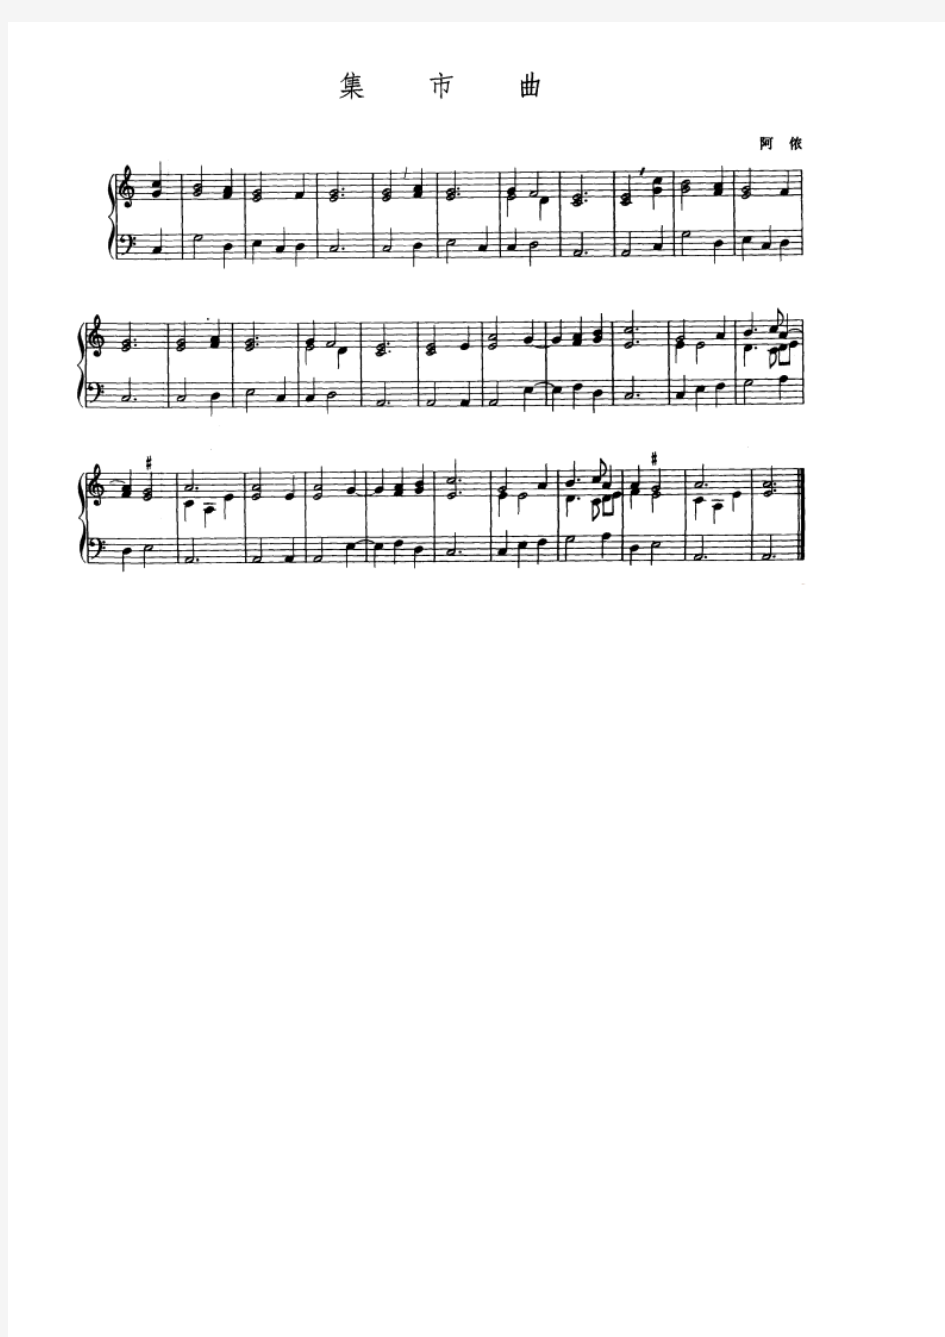 集市曲 正谱 钢琴谱 五线谱 乐谱.pdf